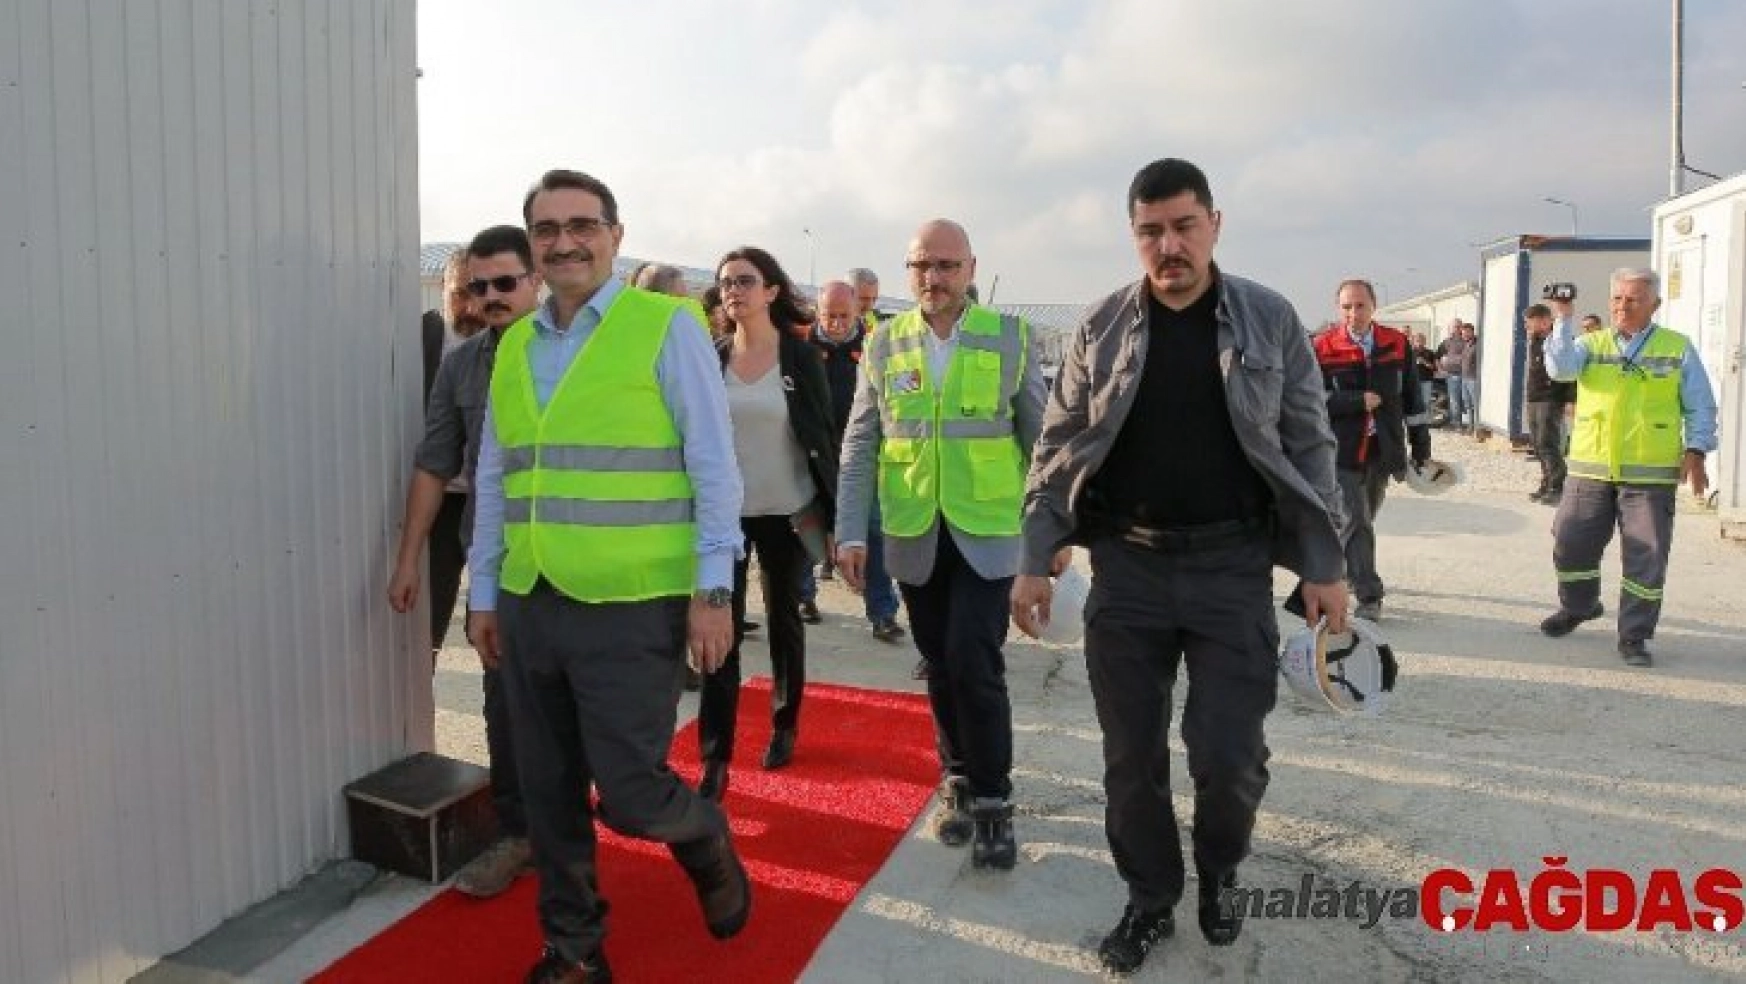 Enerji Bakanı Dönmez Türk Akım alım terminalini ziyaret etti